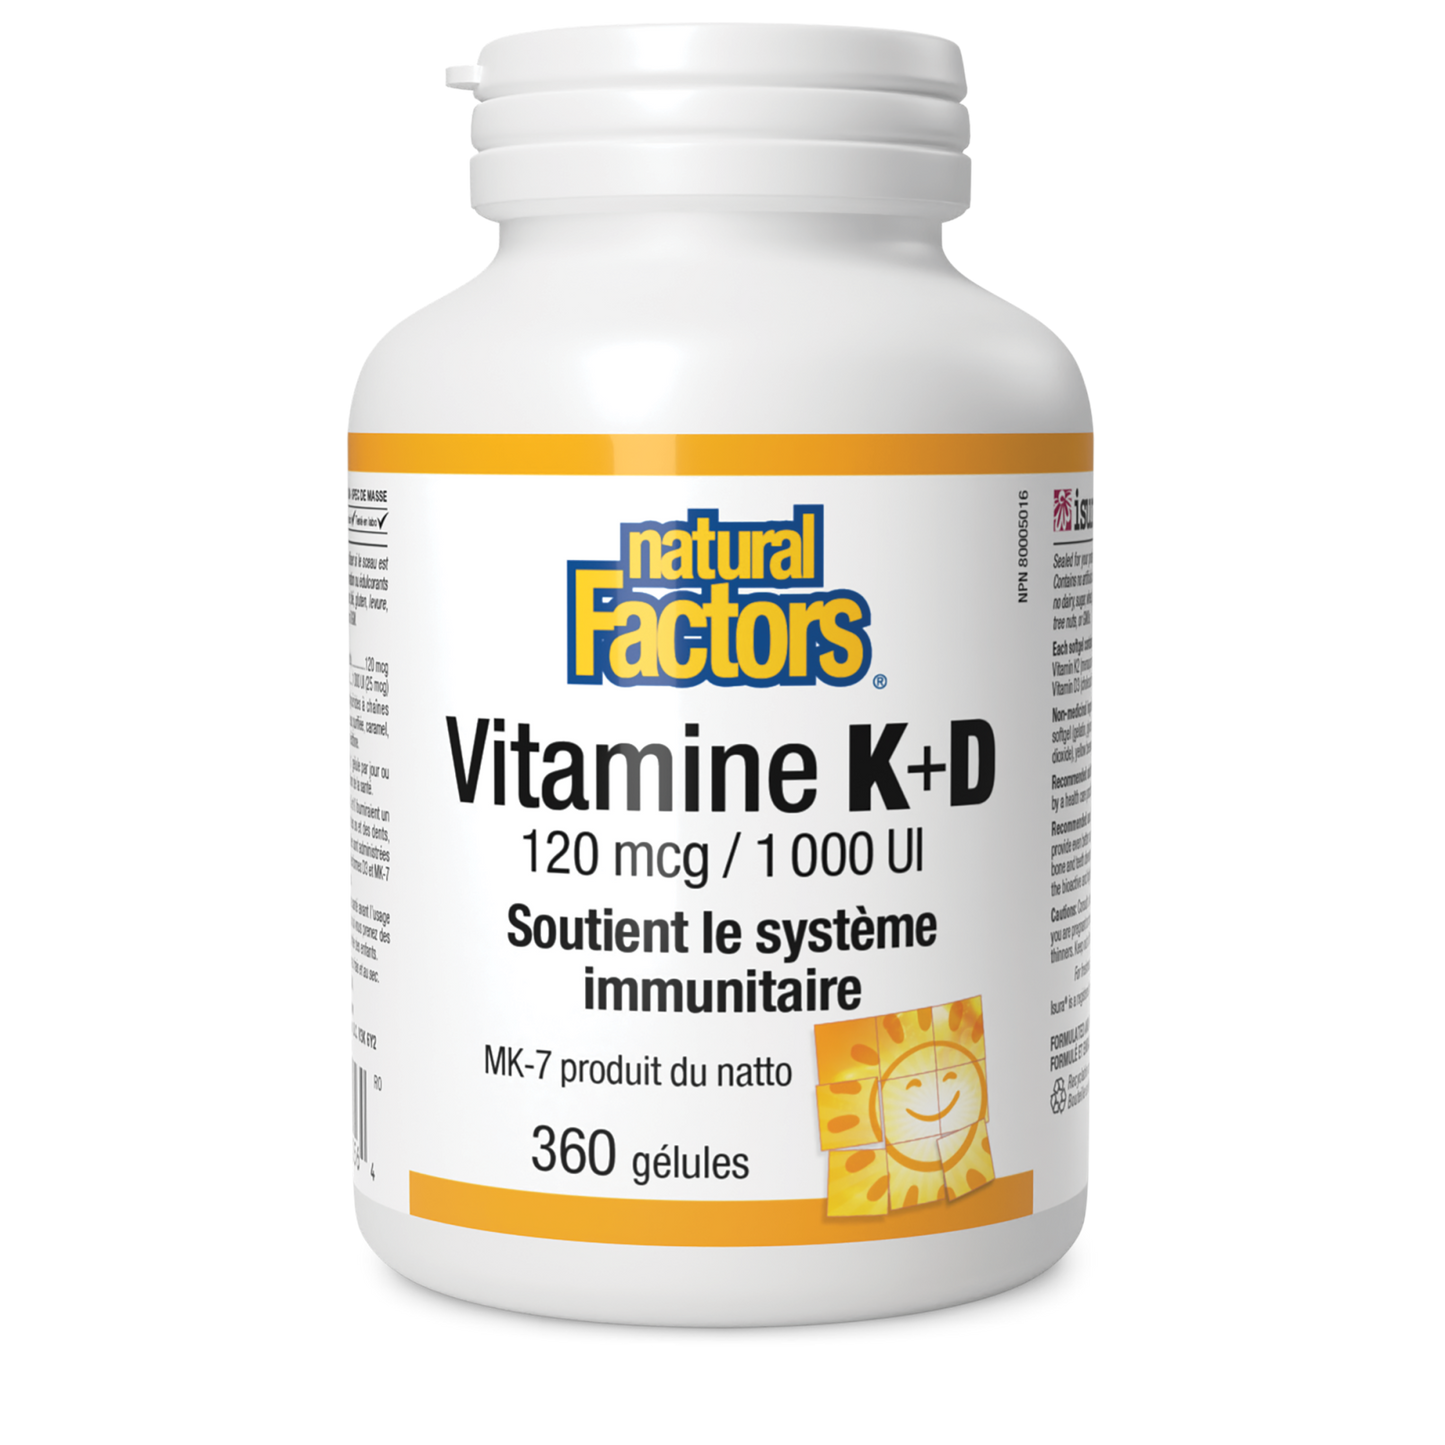 Vitamine K+D 120 mcg/1 000 UI, Natural Factors|v|image|1056